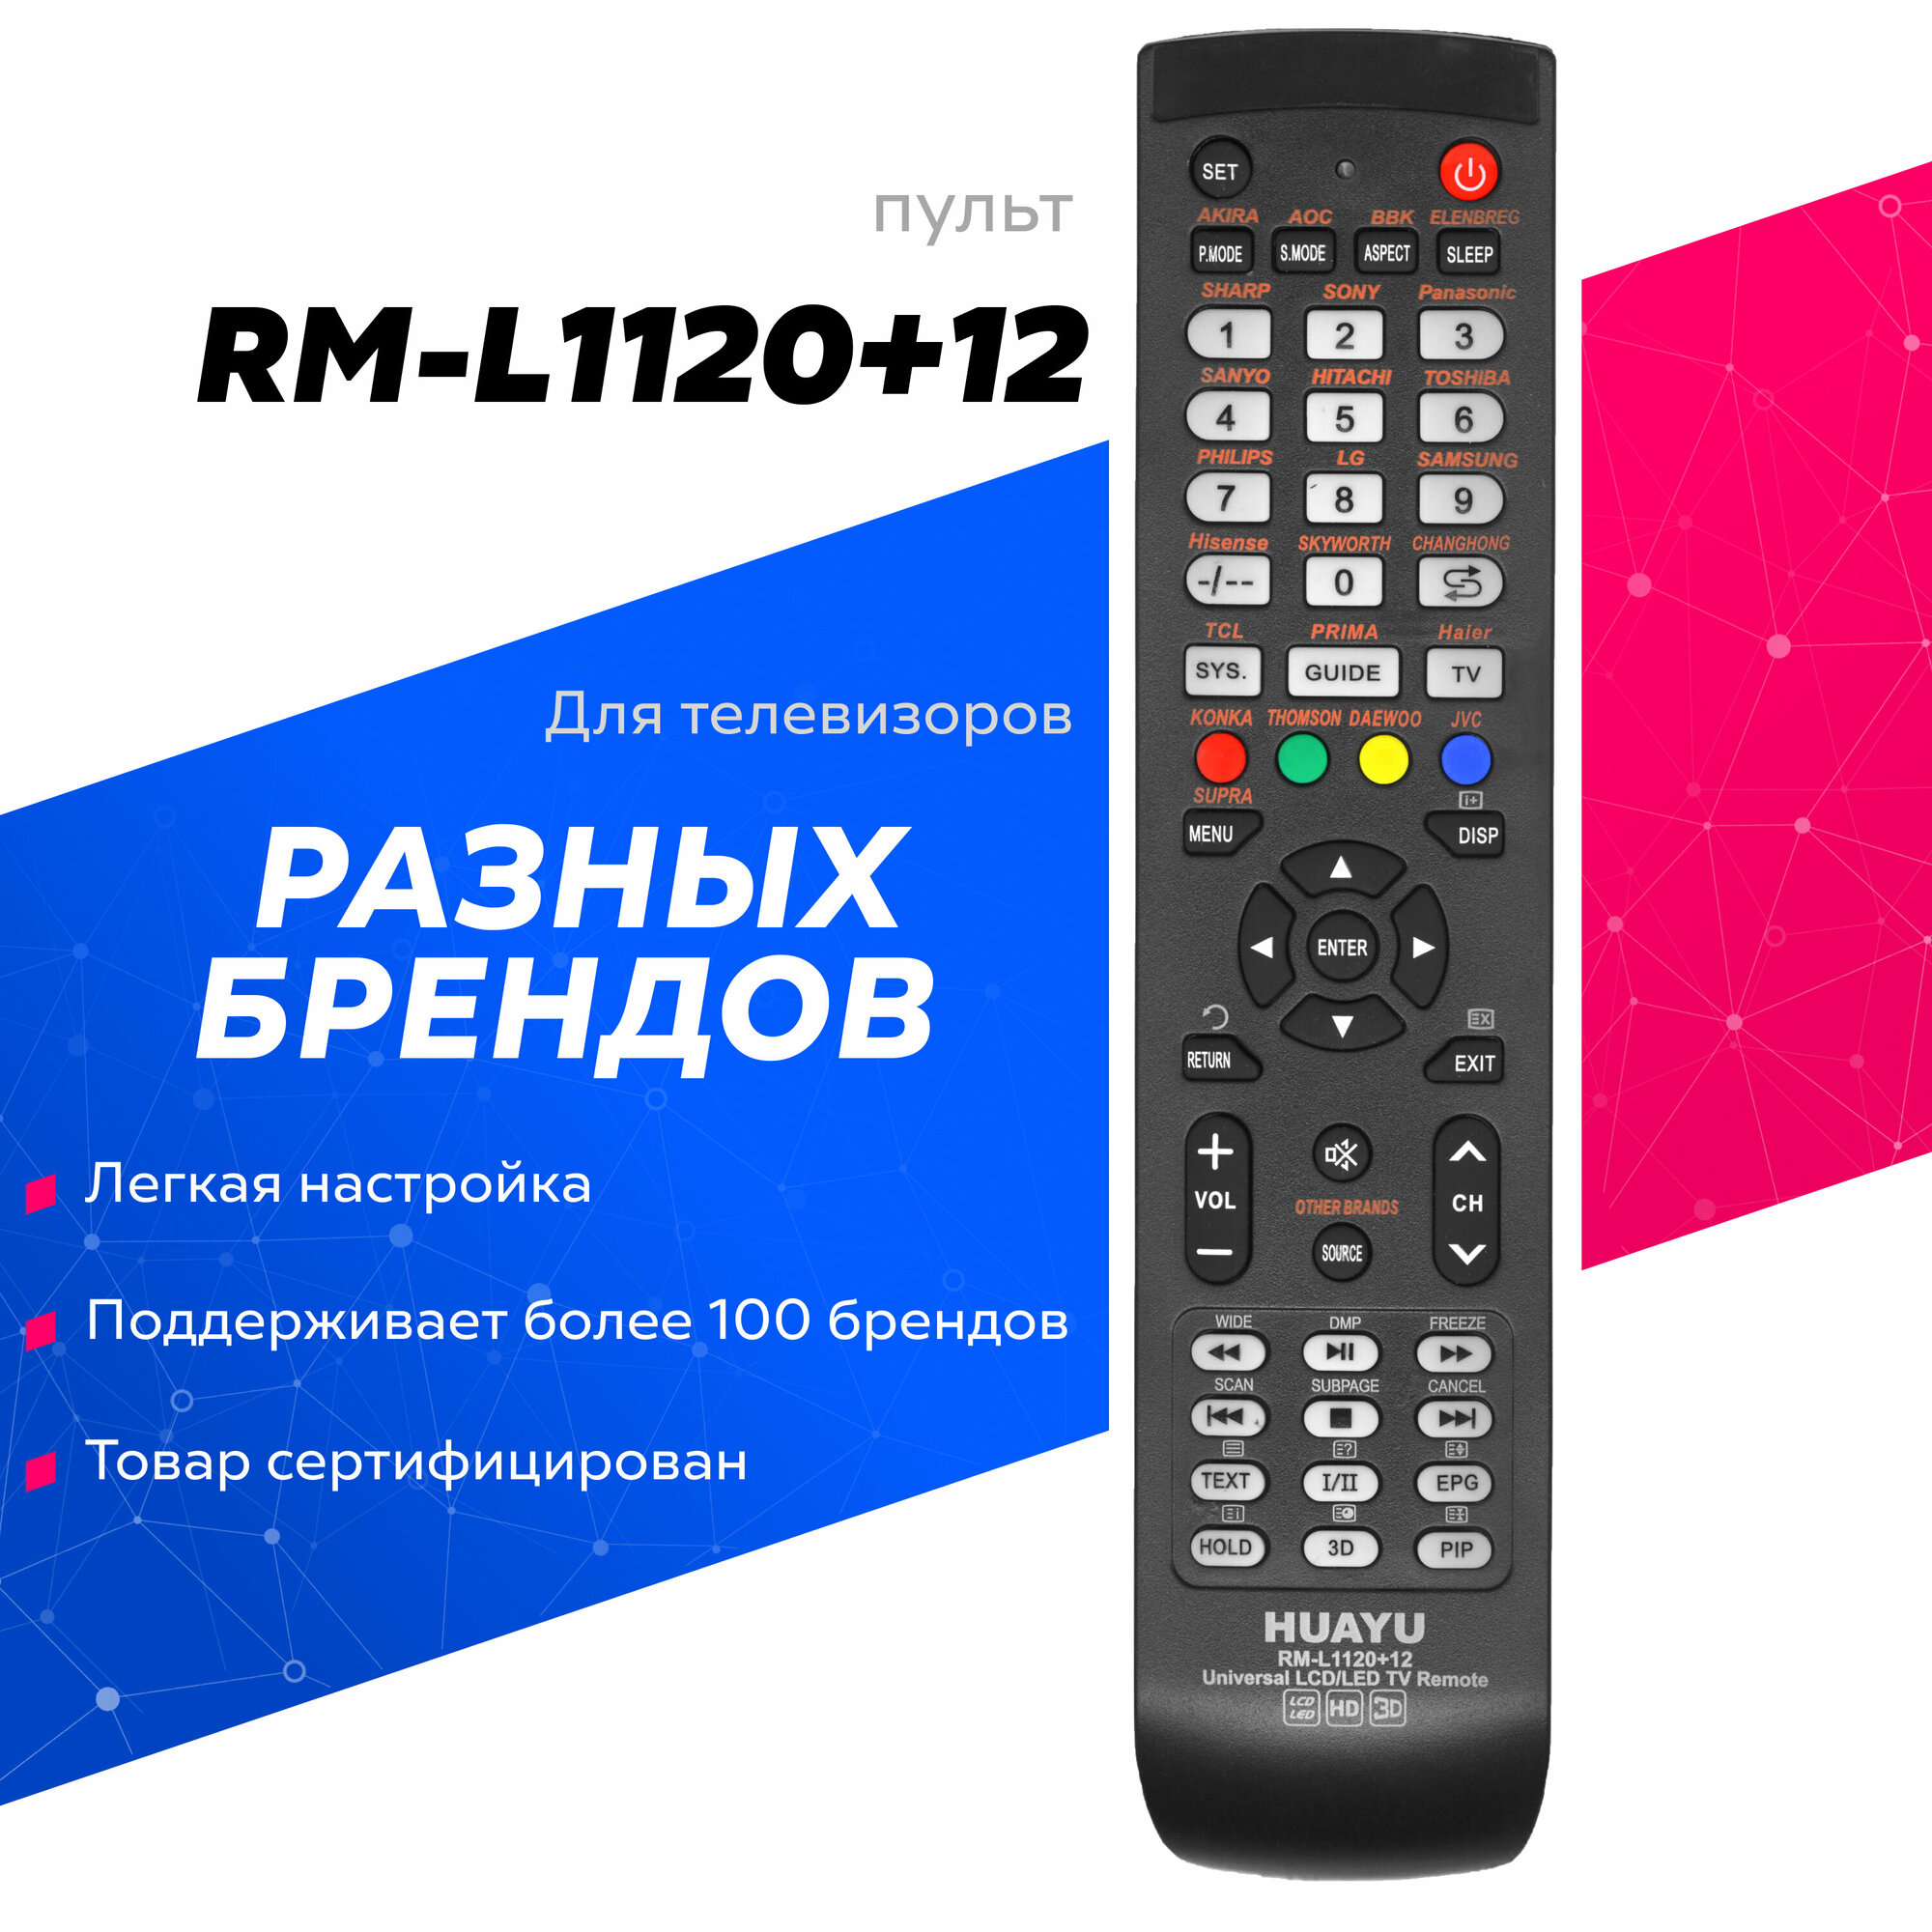 Универсальный пульт HUAYU RM-L1120+12 для телевизоров различных марок